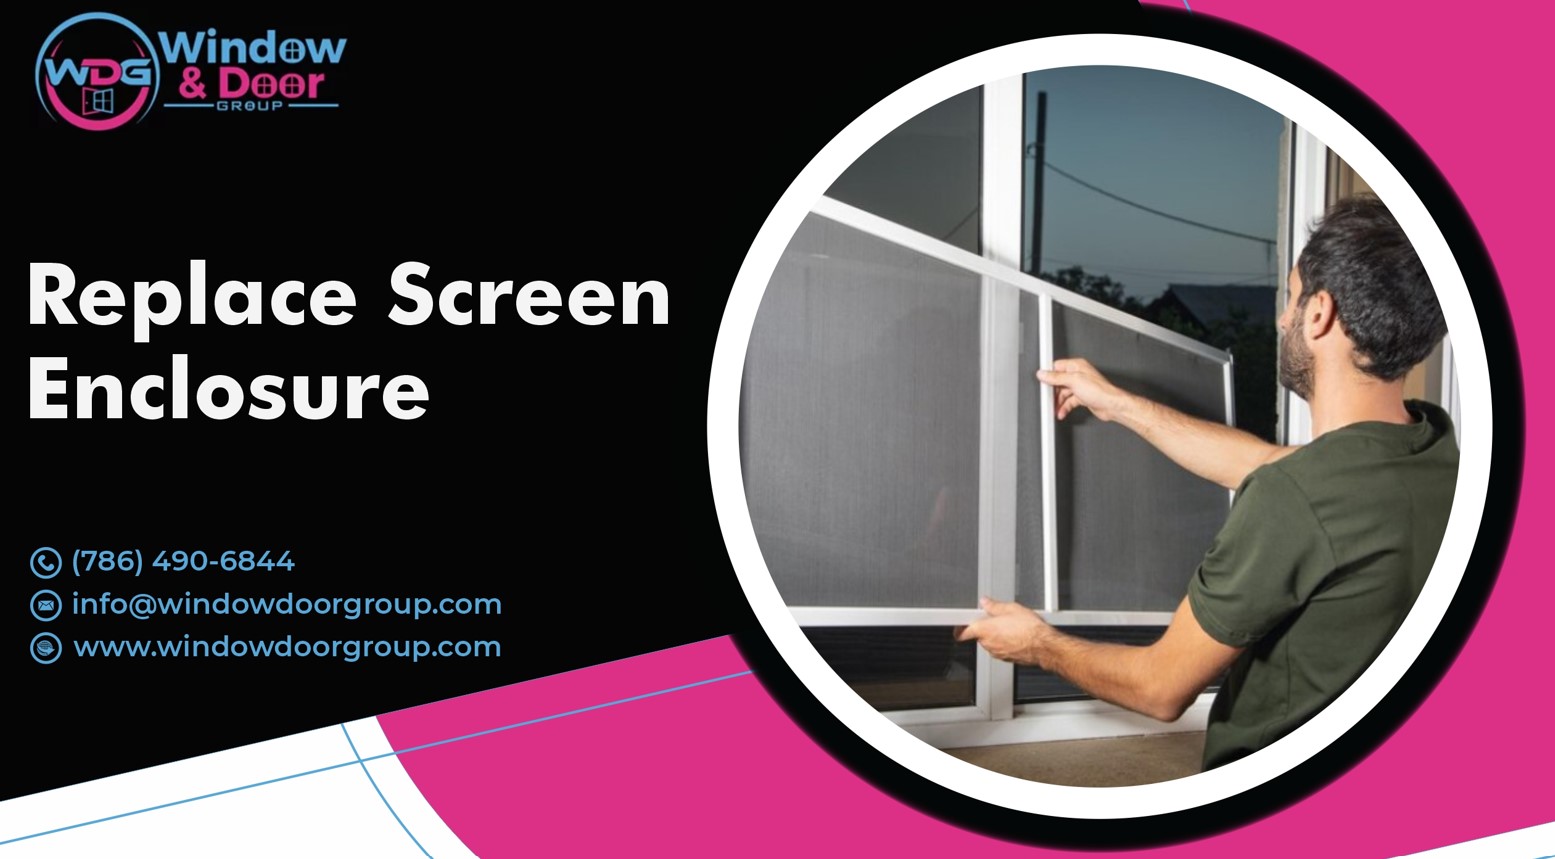 Replace Screen Enclosure